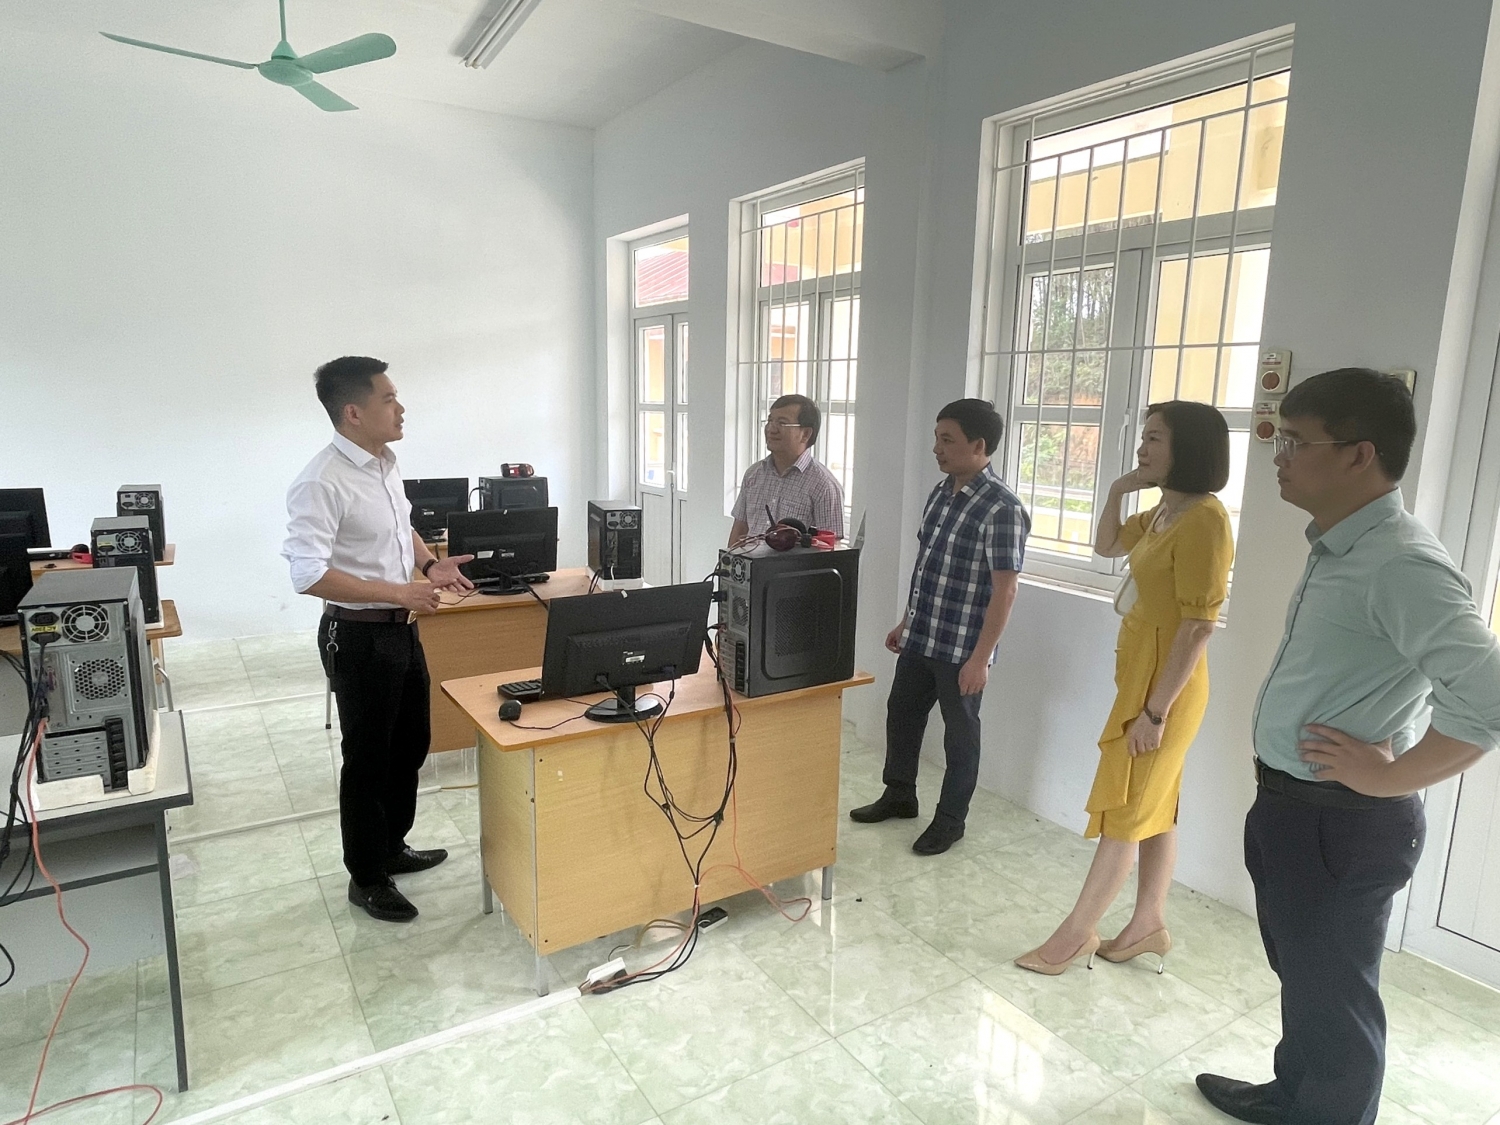 BSR tài trợ 5 tỷ đồng xây Trường Tiểu học xã Thanh Long (Lạng Sơn)